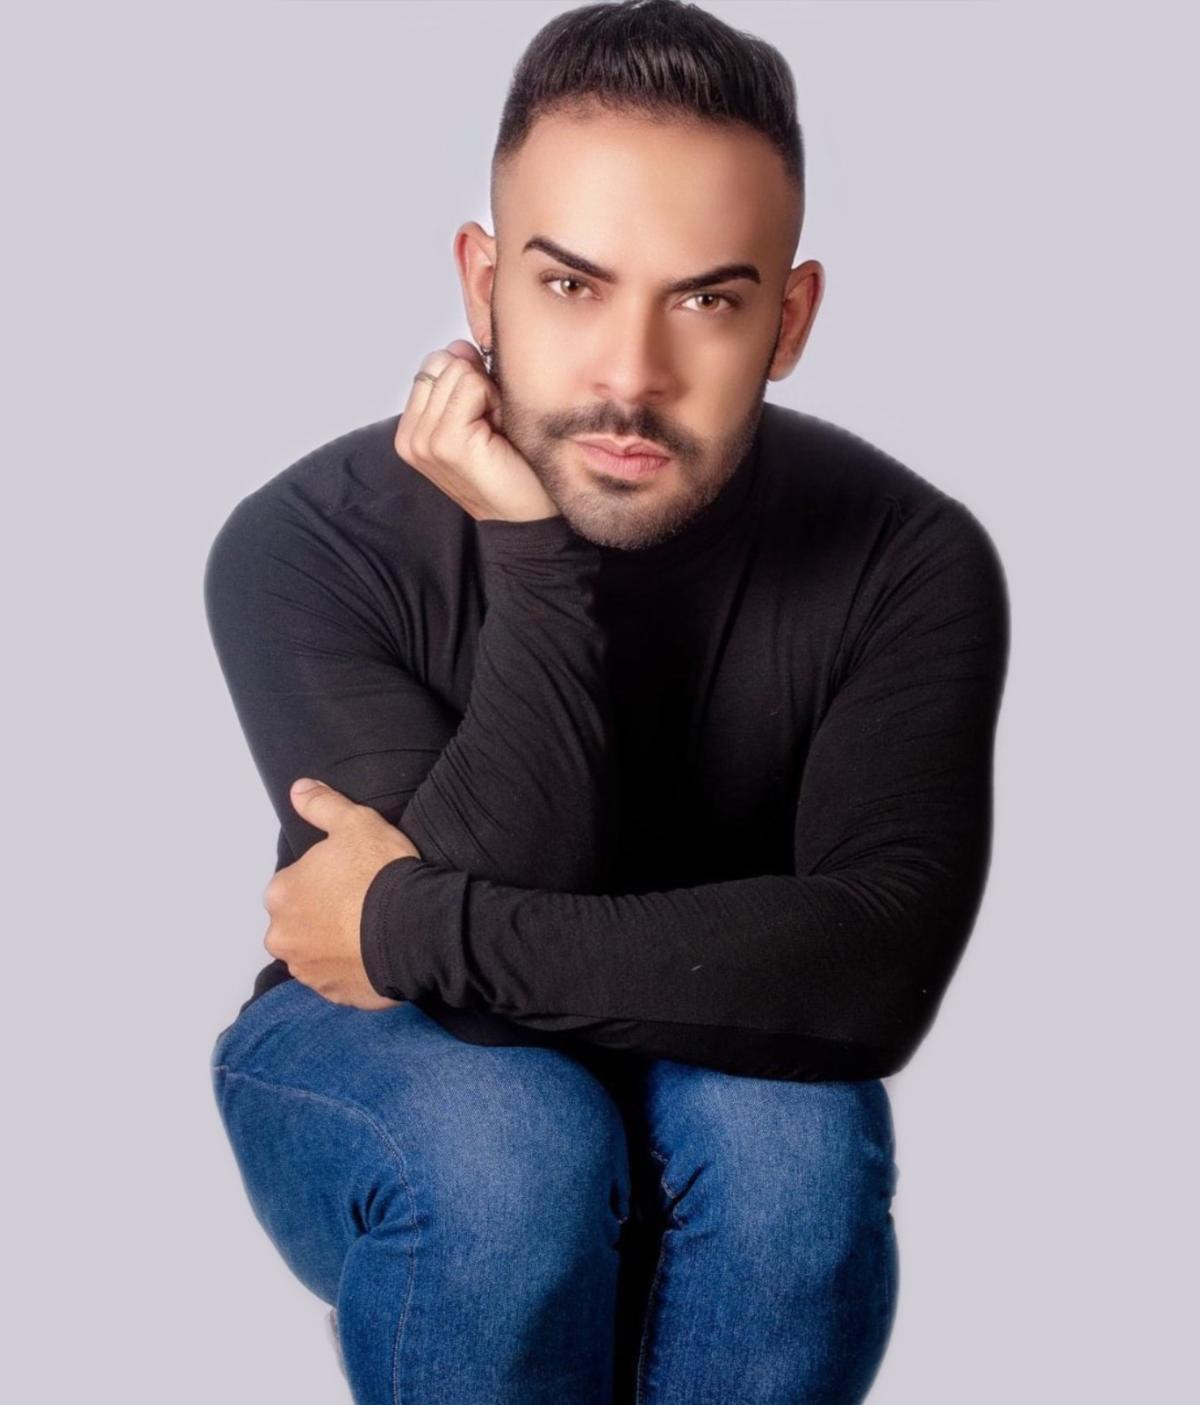 José Alfredo abrirá el concierto de Cristian Castro en Puerto Rico